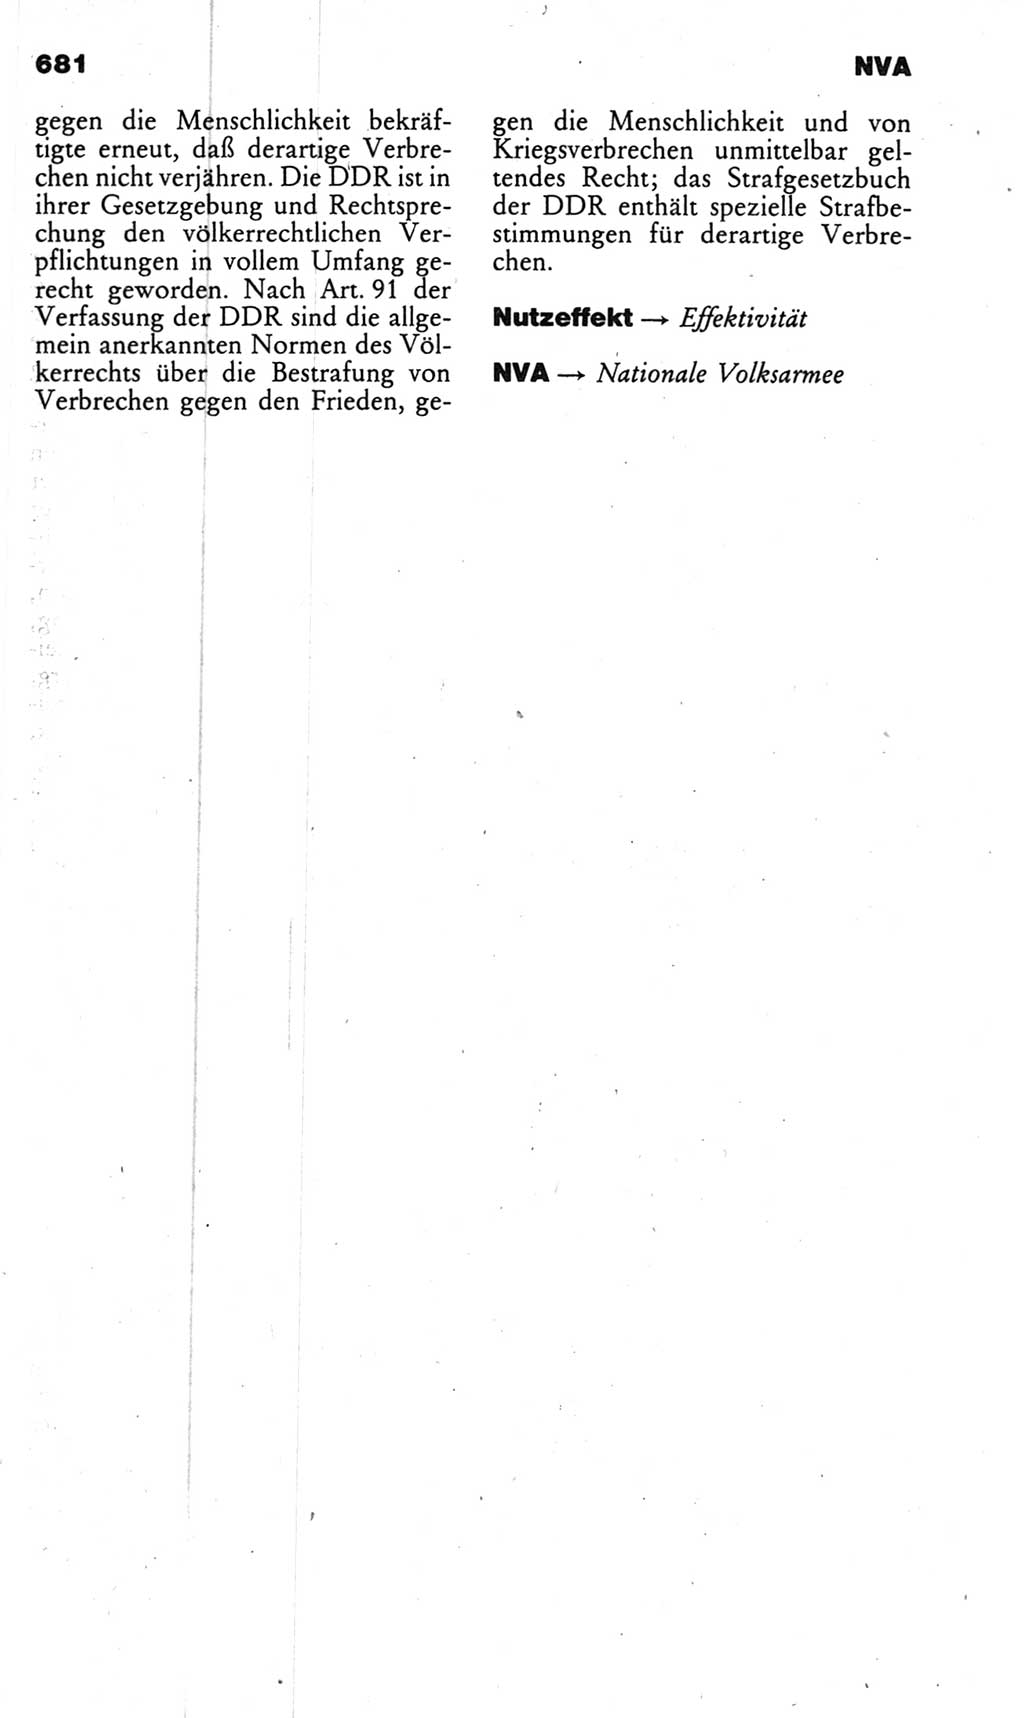 Kleines politisches Wörterbuch [Deutsche Demokratische Republik (DDR)] 1985, Seite 681 (Kl. pol. Wb. DDR 1985, S. 681)